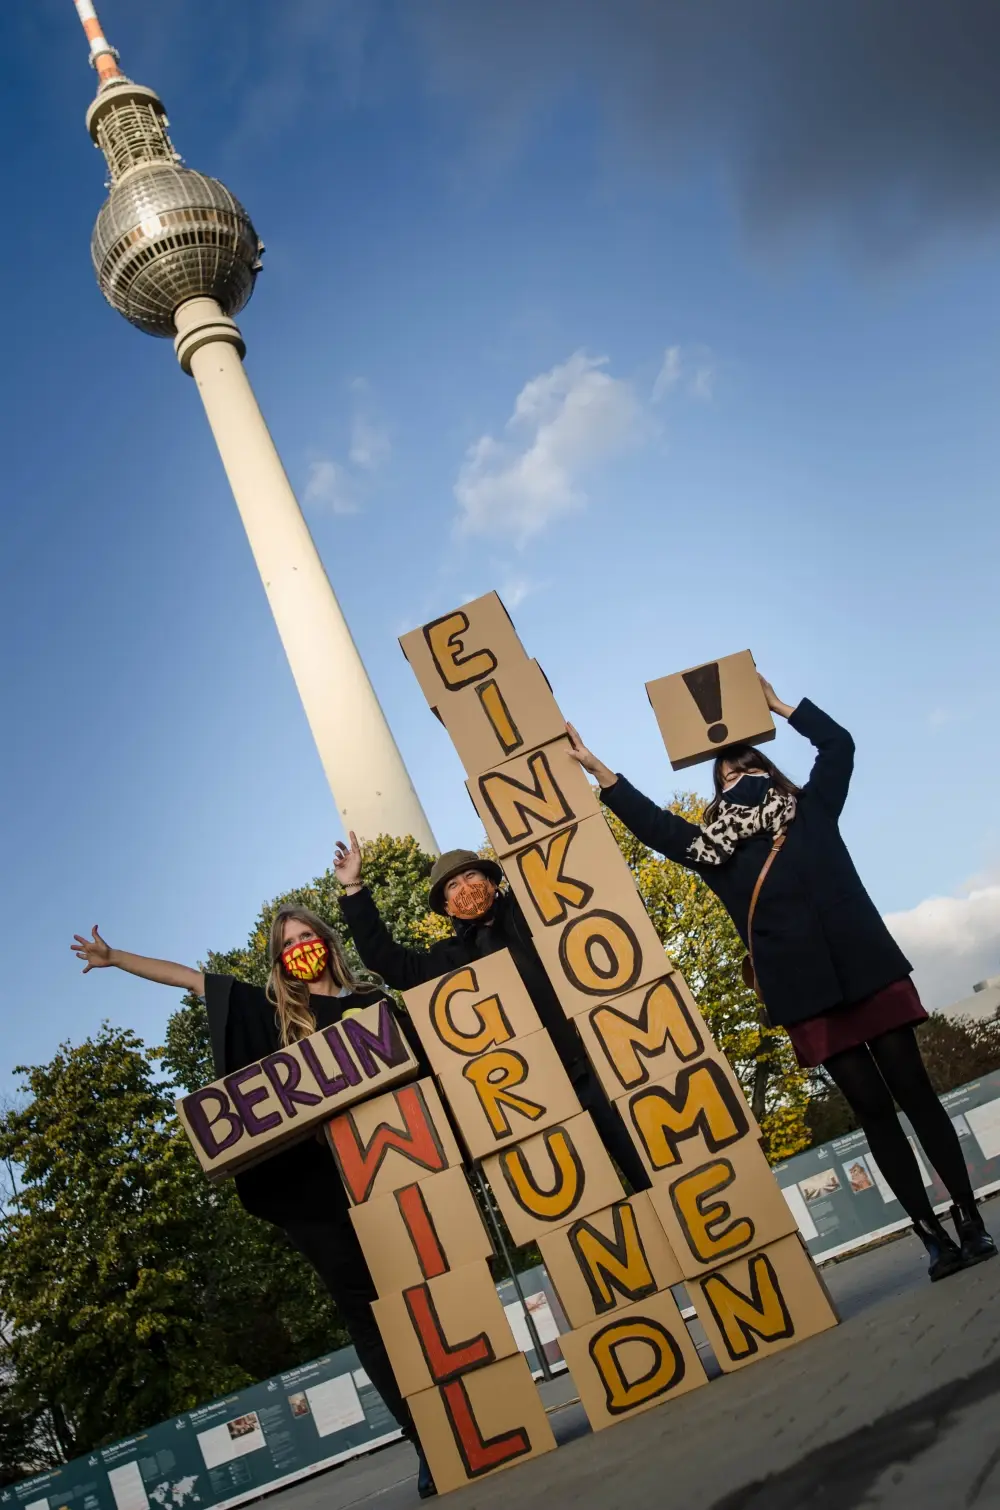 Mitglieder der Expedition Grundeinkommen posieren mit Pappkartons, deren Aufschrift den Satz "Berlin will Grundeinkommen" ergibt.